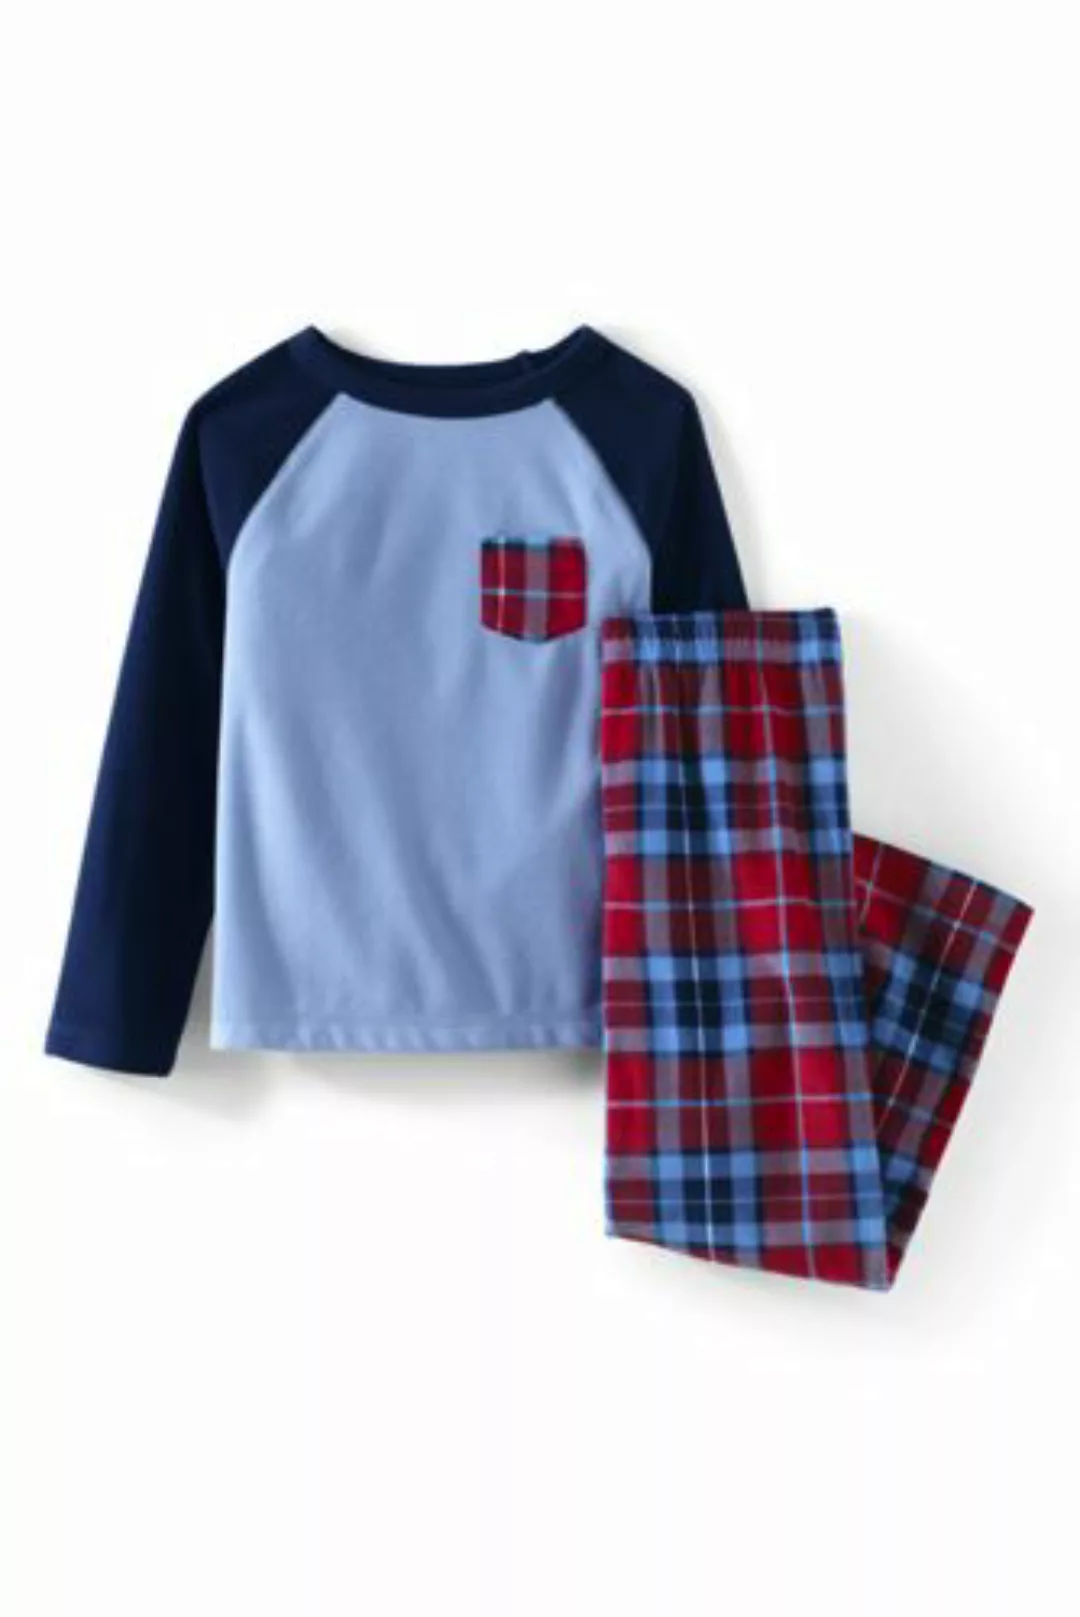 Pyjama-Set aus Fleece, Größe: 146-152, Rot, by Lands' End, Satt Rot Multi K günstig online kaufen